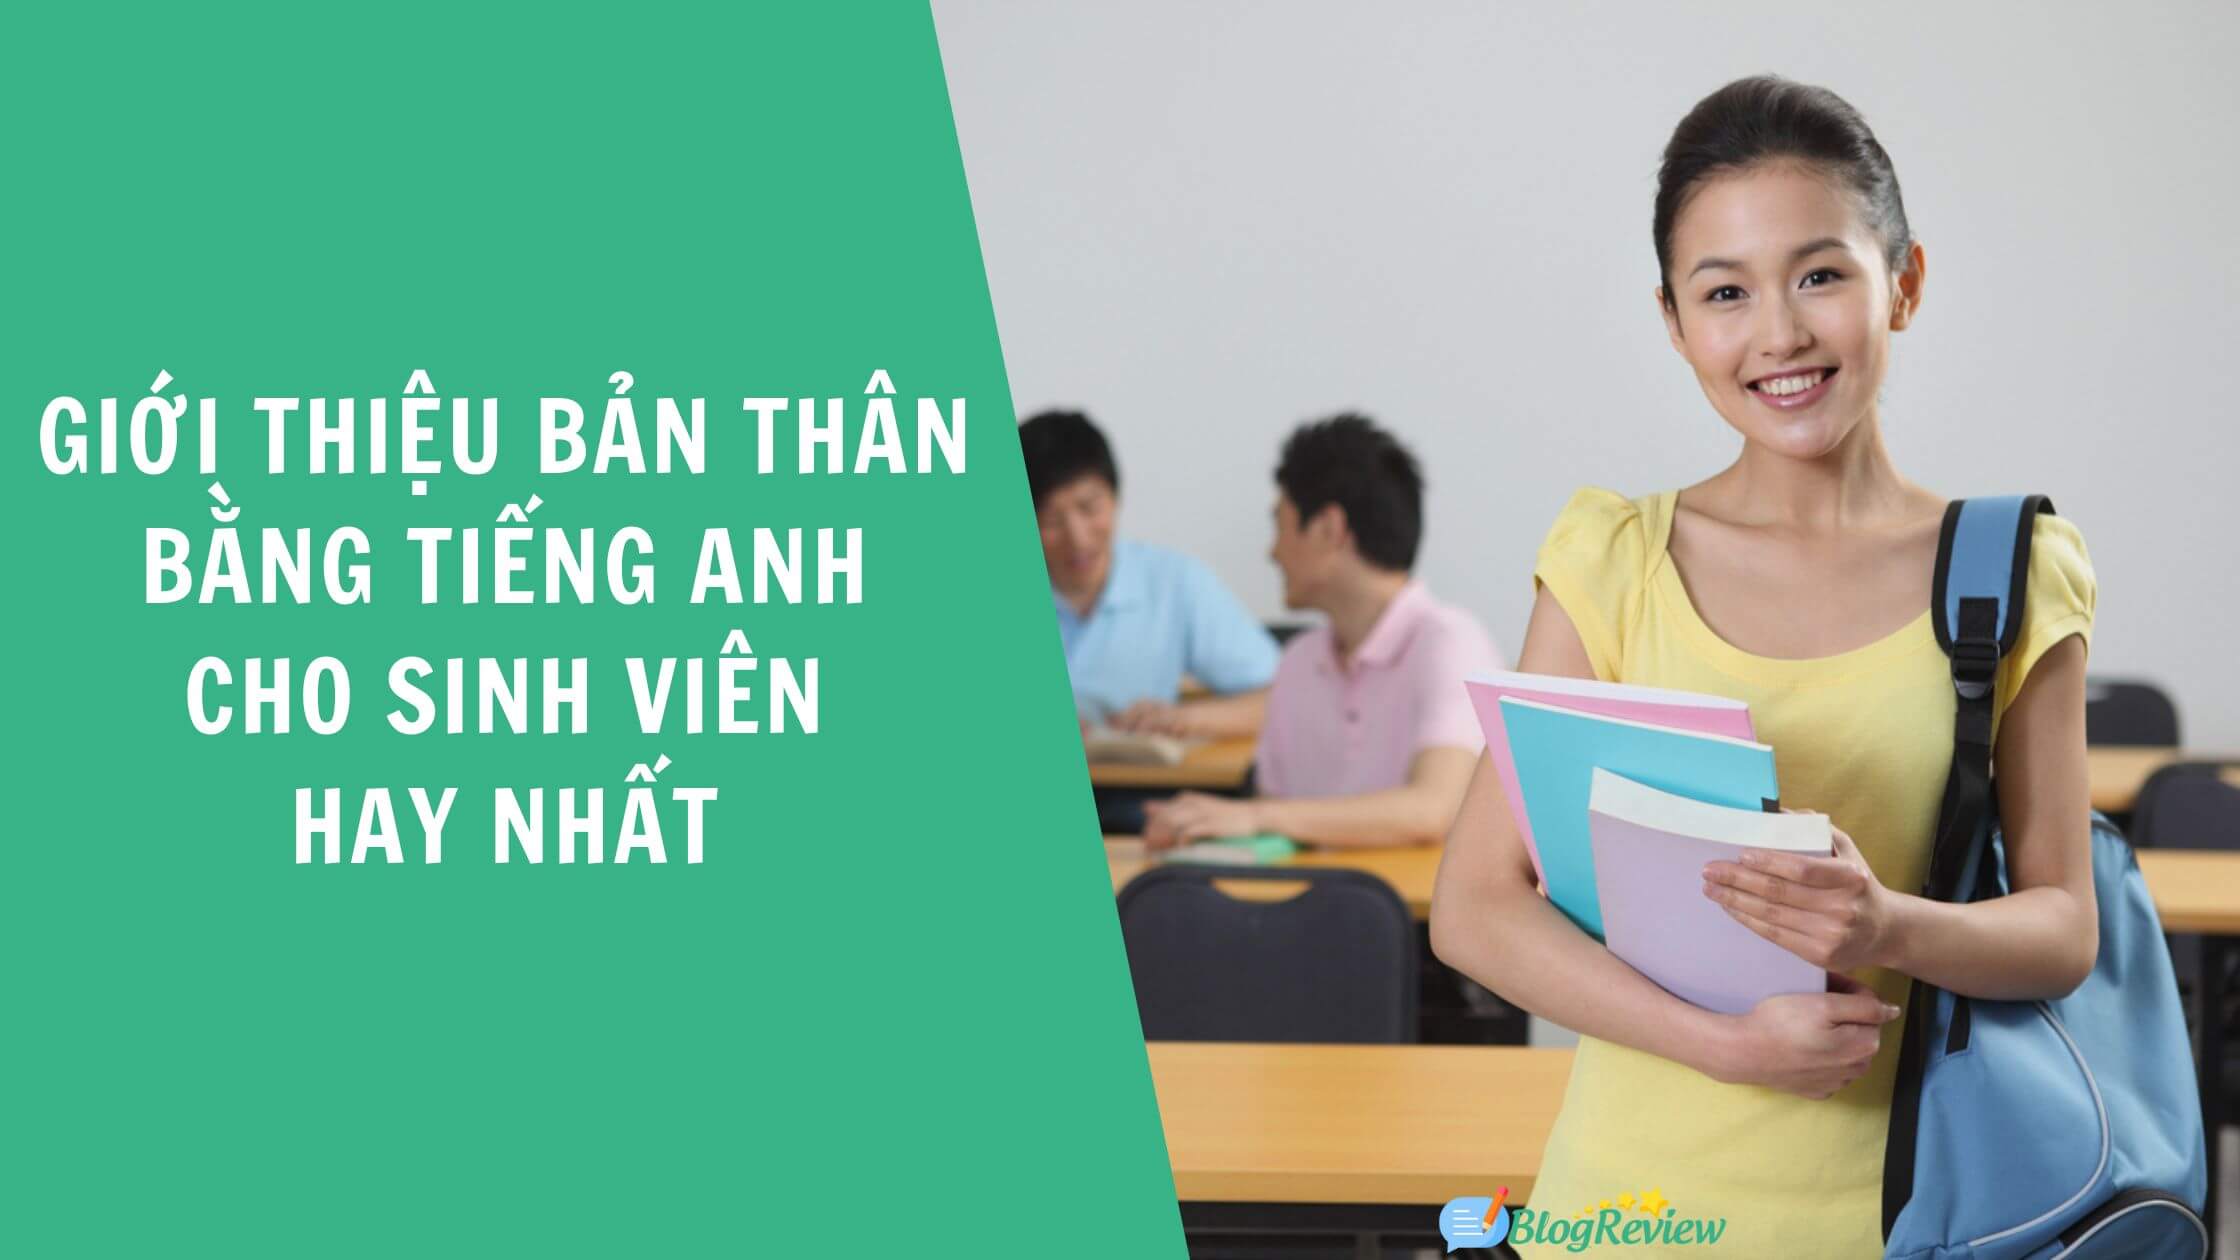 Gioi Thieu Ban Than Bang Tieng Anh Cho Sinh Vien 4